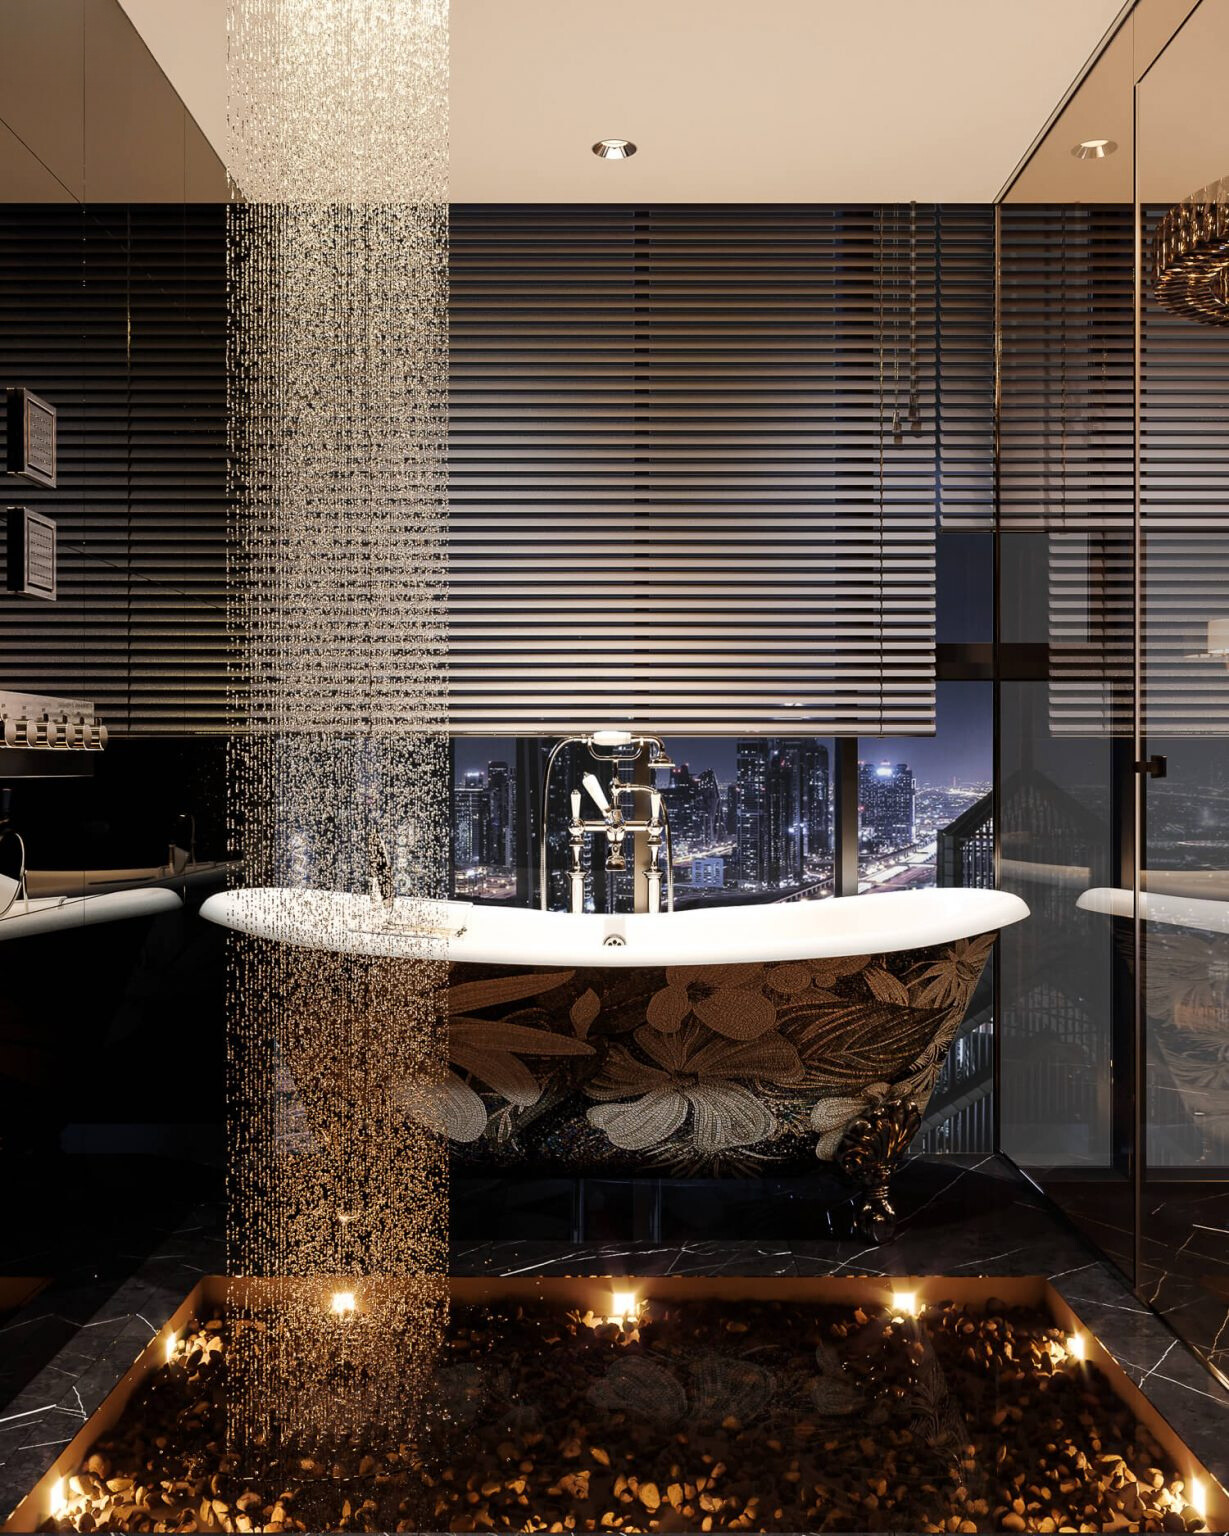 Không gian phòng tắm phong cách Modern Luxury tạo điểm nhấn cùng hệ thống nội thất cao cấp